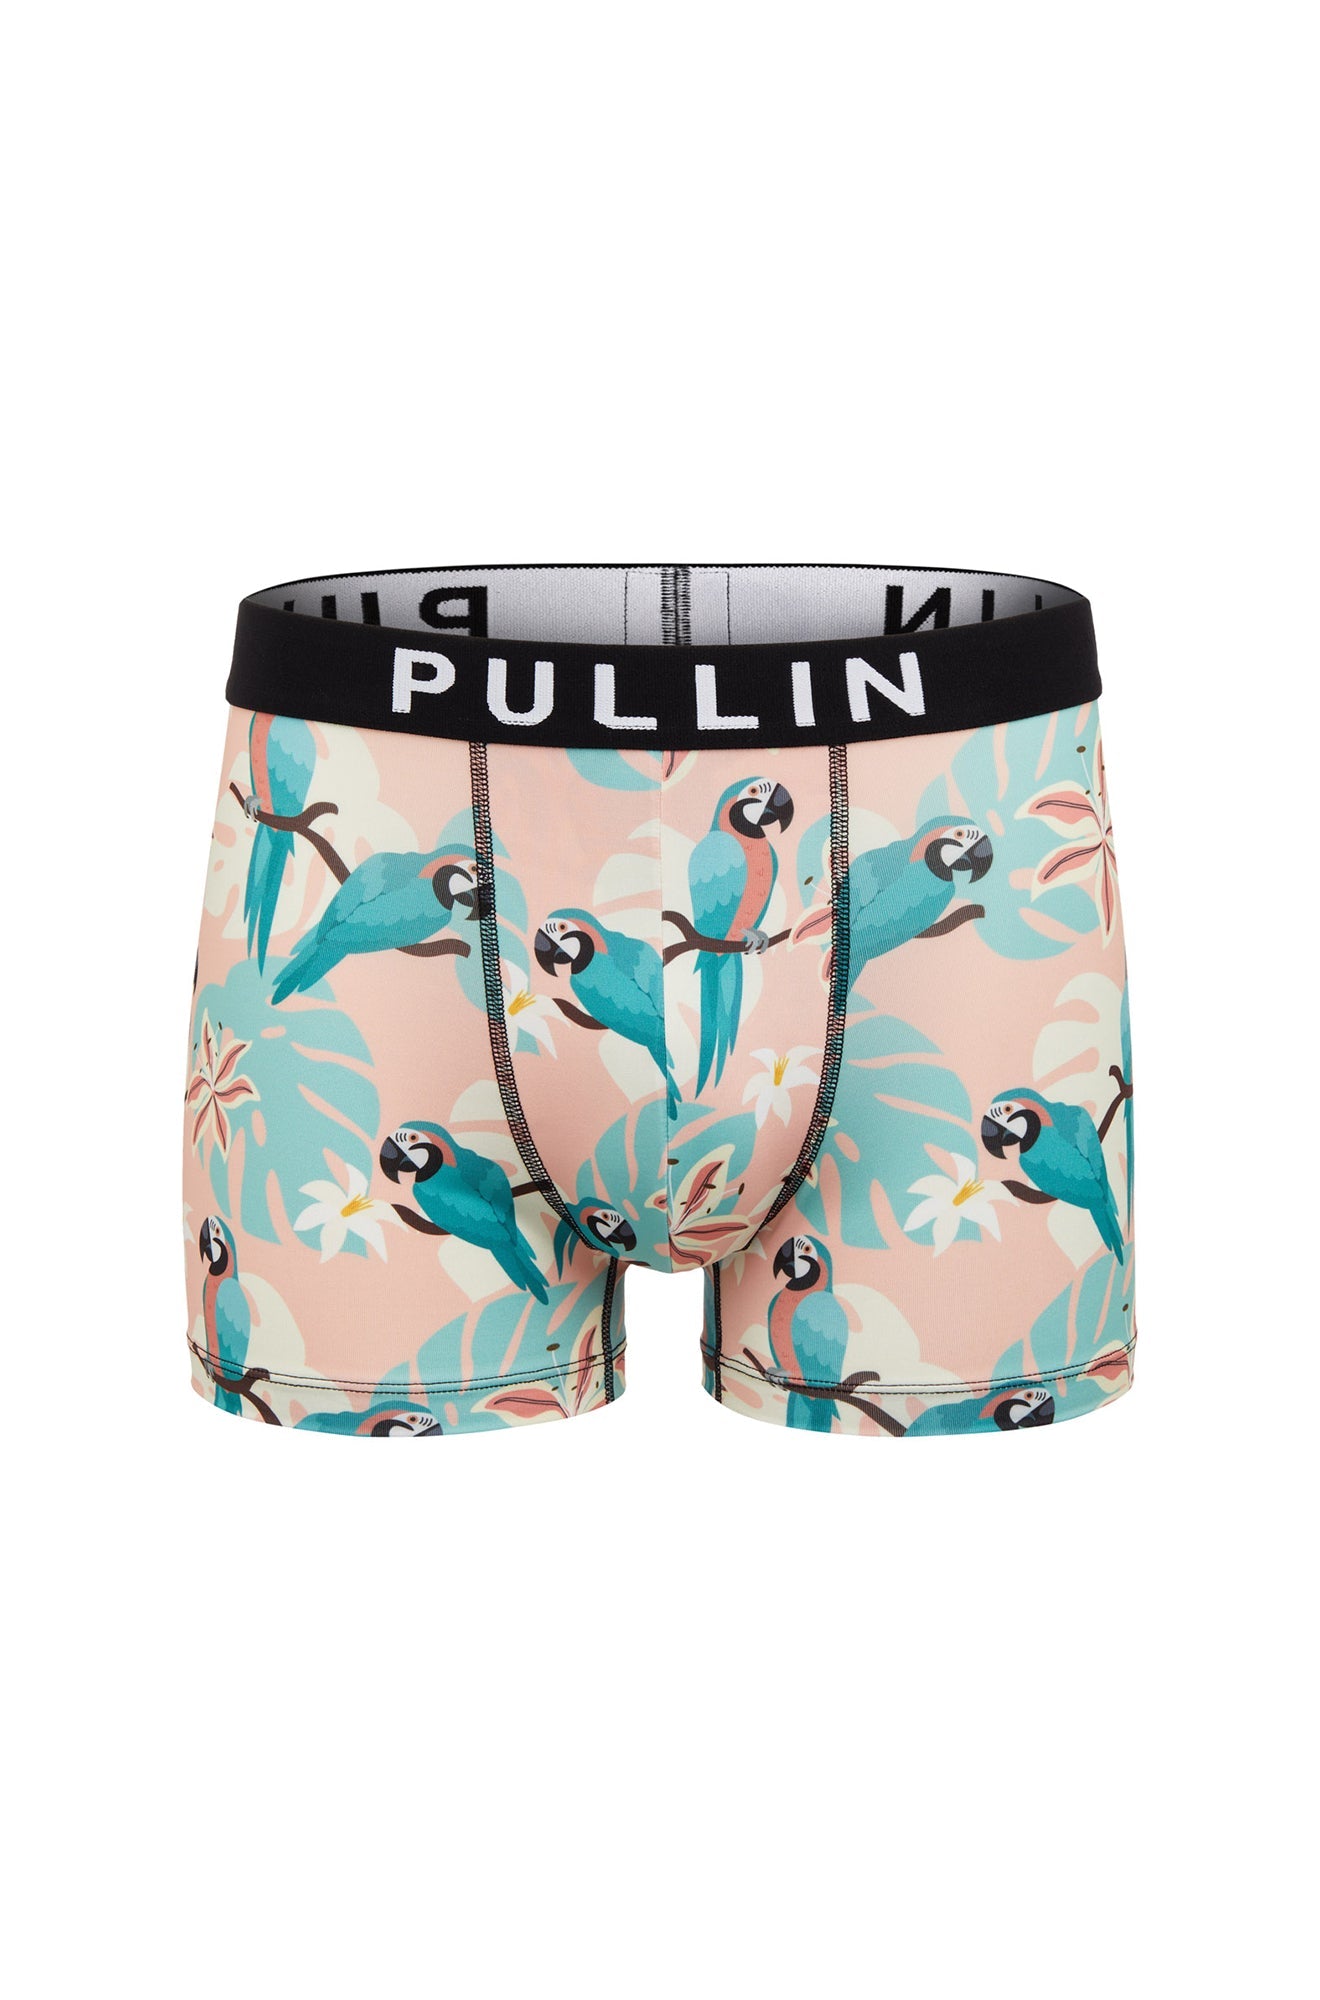 Men's underwear by Pullin, MAS PARRODISE